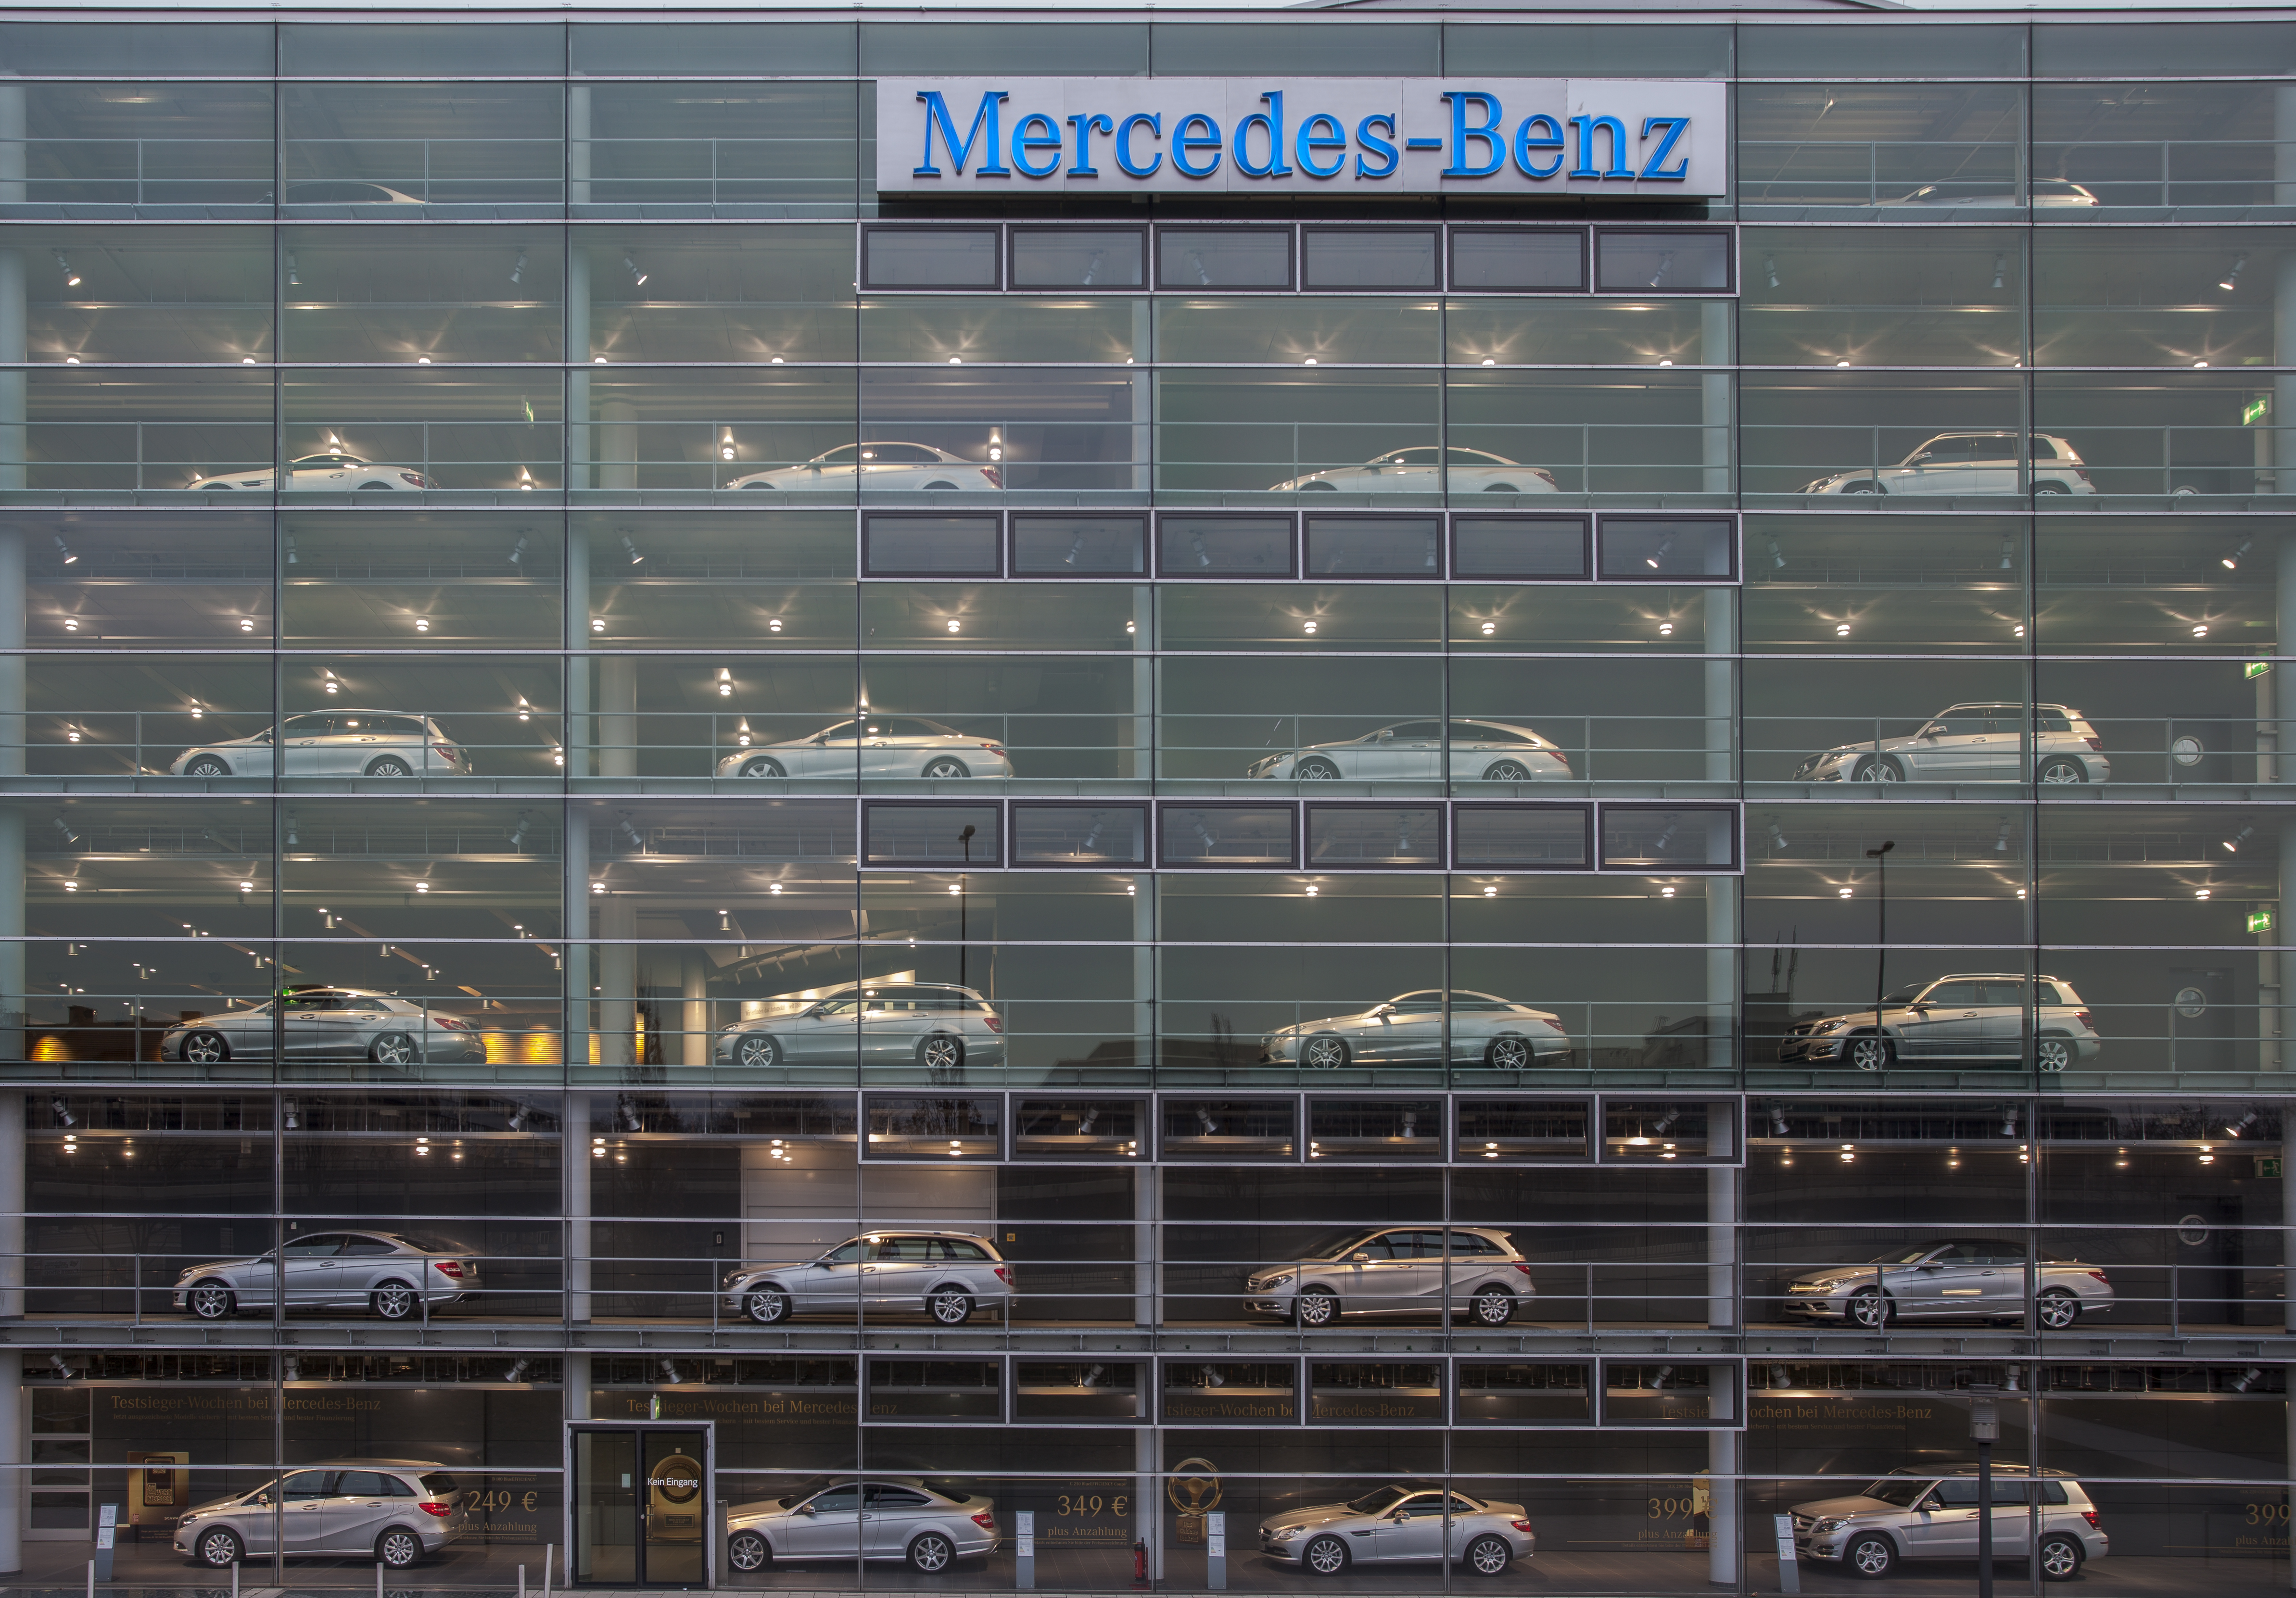 Concesionario de Mercedes-Benz, Múnich, Alemania, 2013-03-30, DD 06